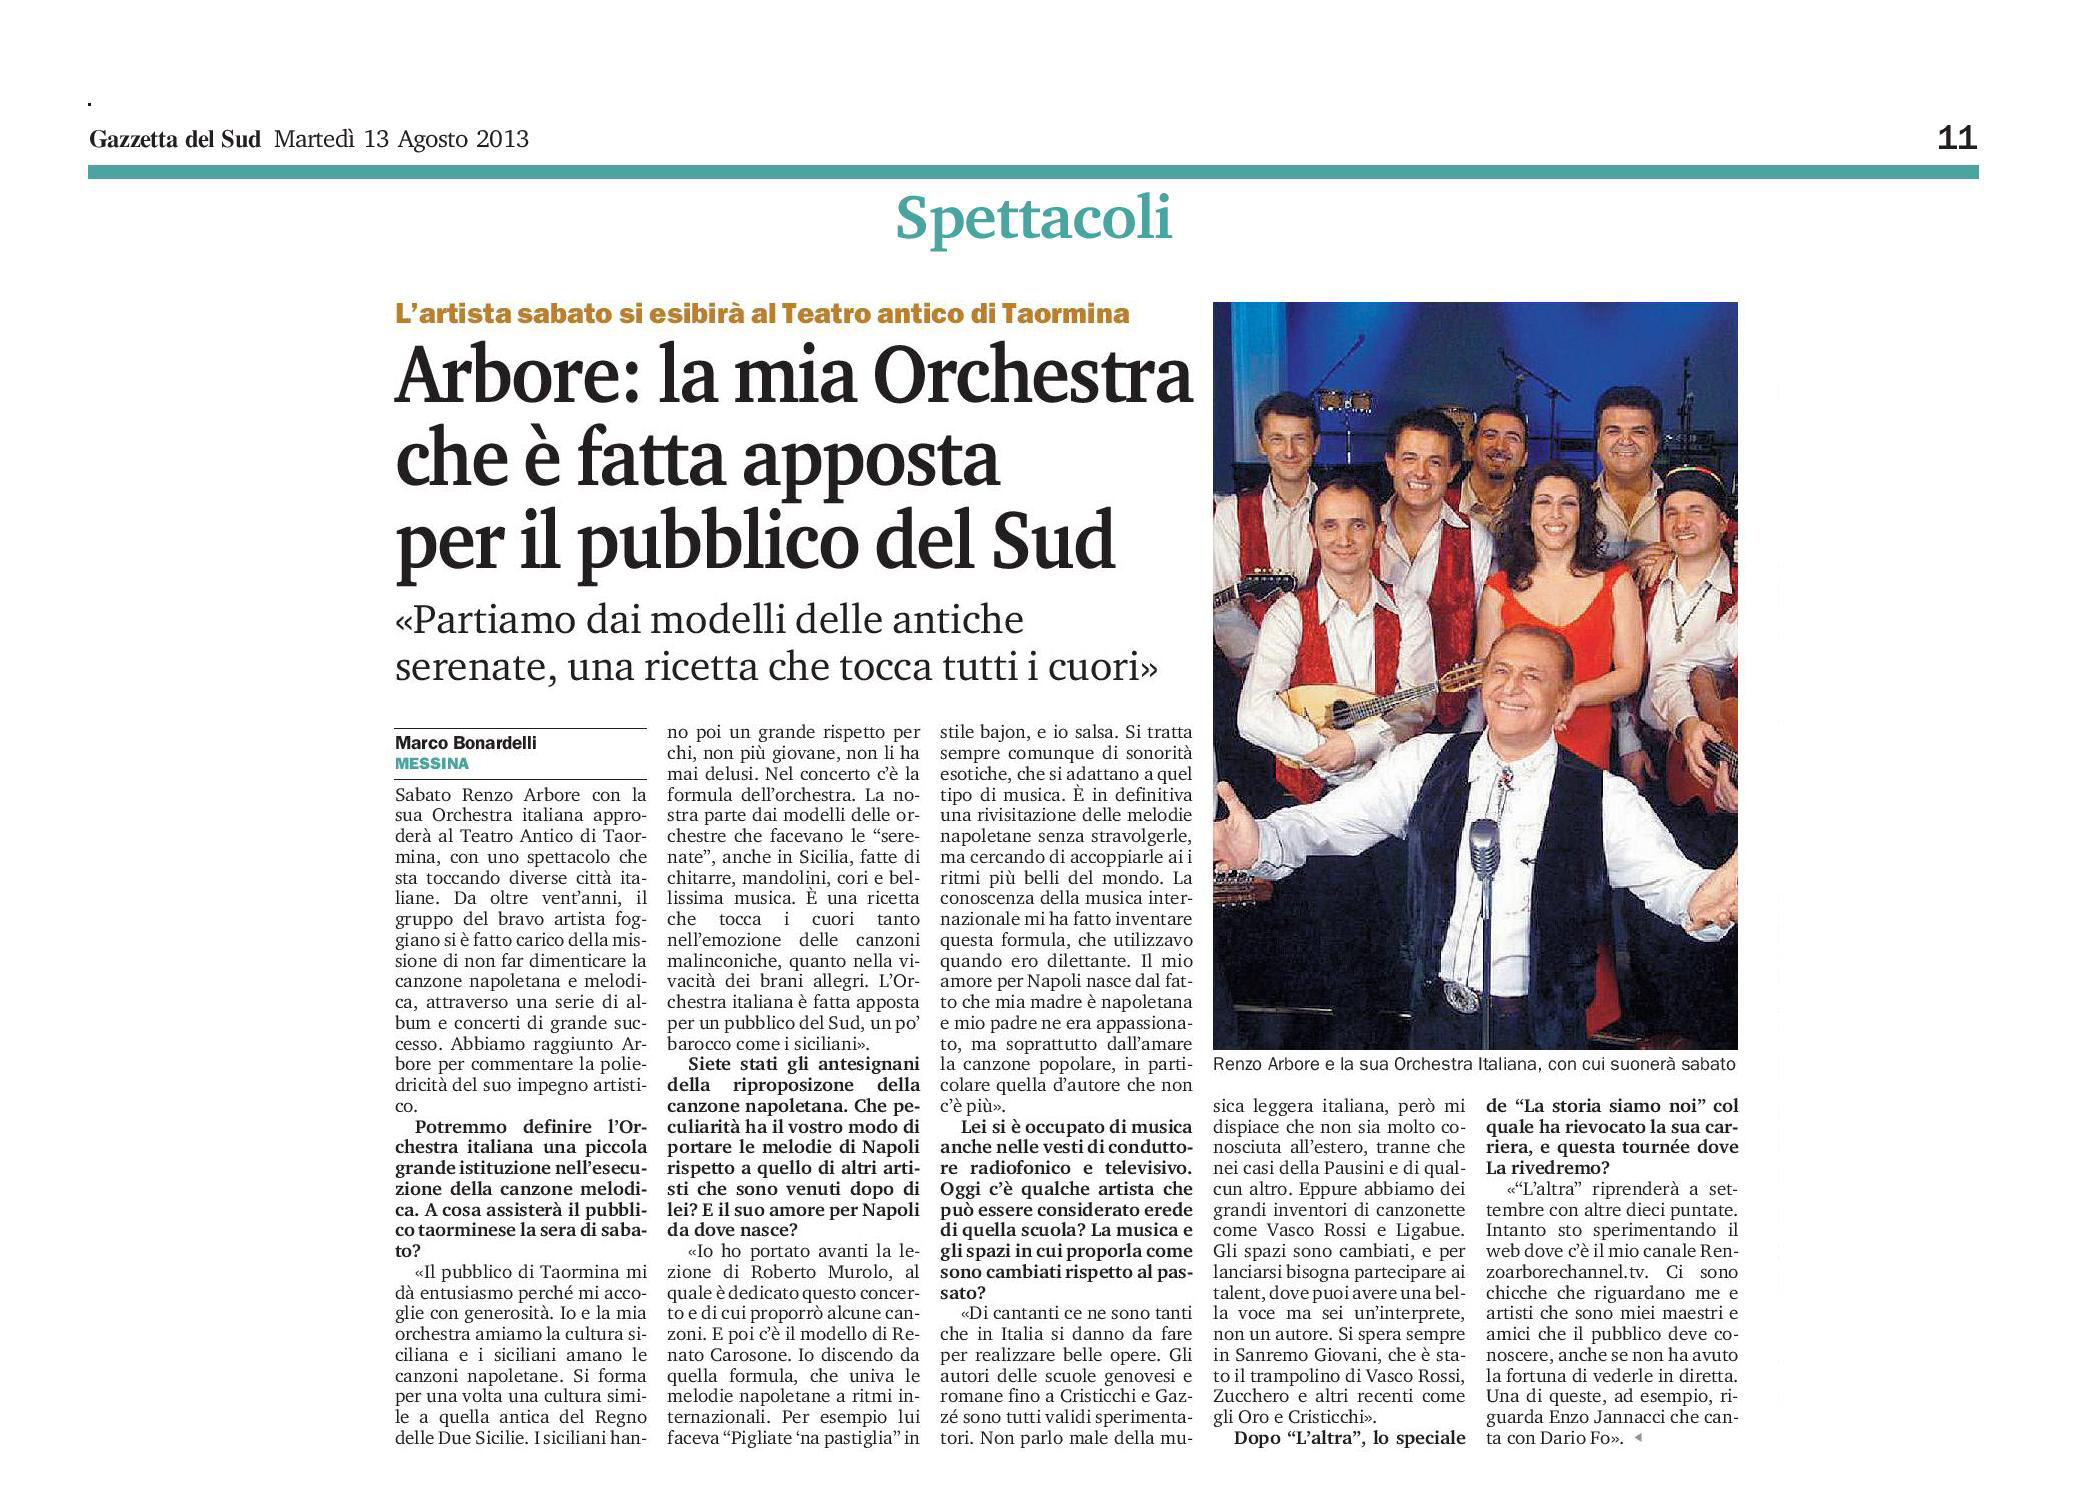 27 - Renzo Arbore - La mia Orchestra che è fatta apposta per il pubblico del Sud  - Gazzetta del Sud - 13 agosto 2013.jpg